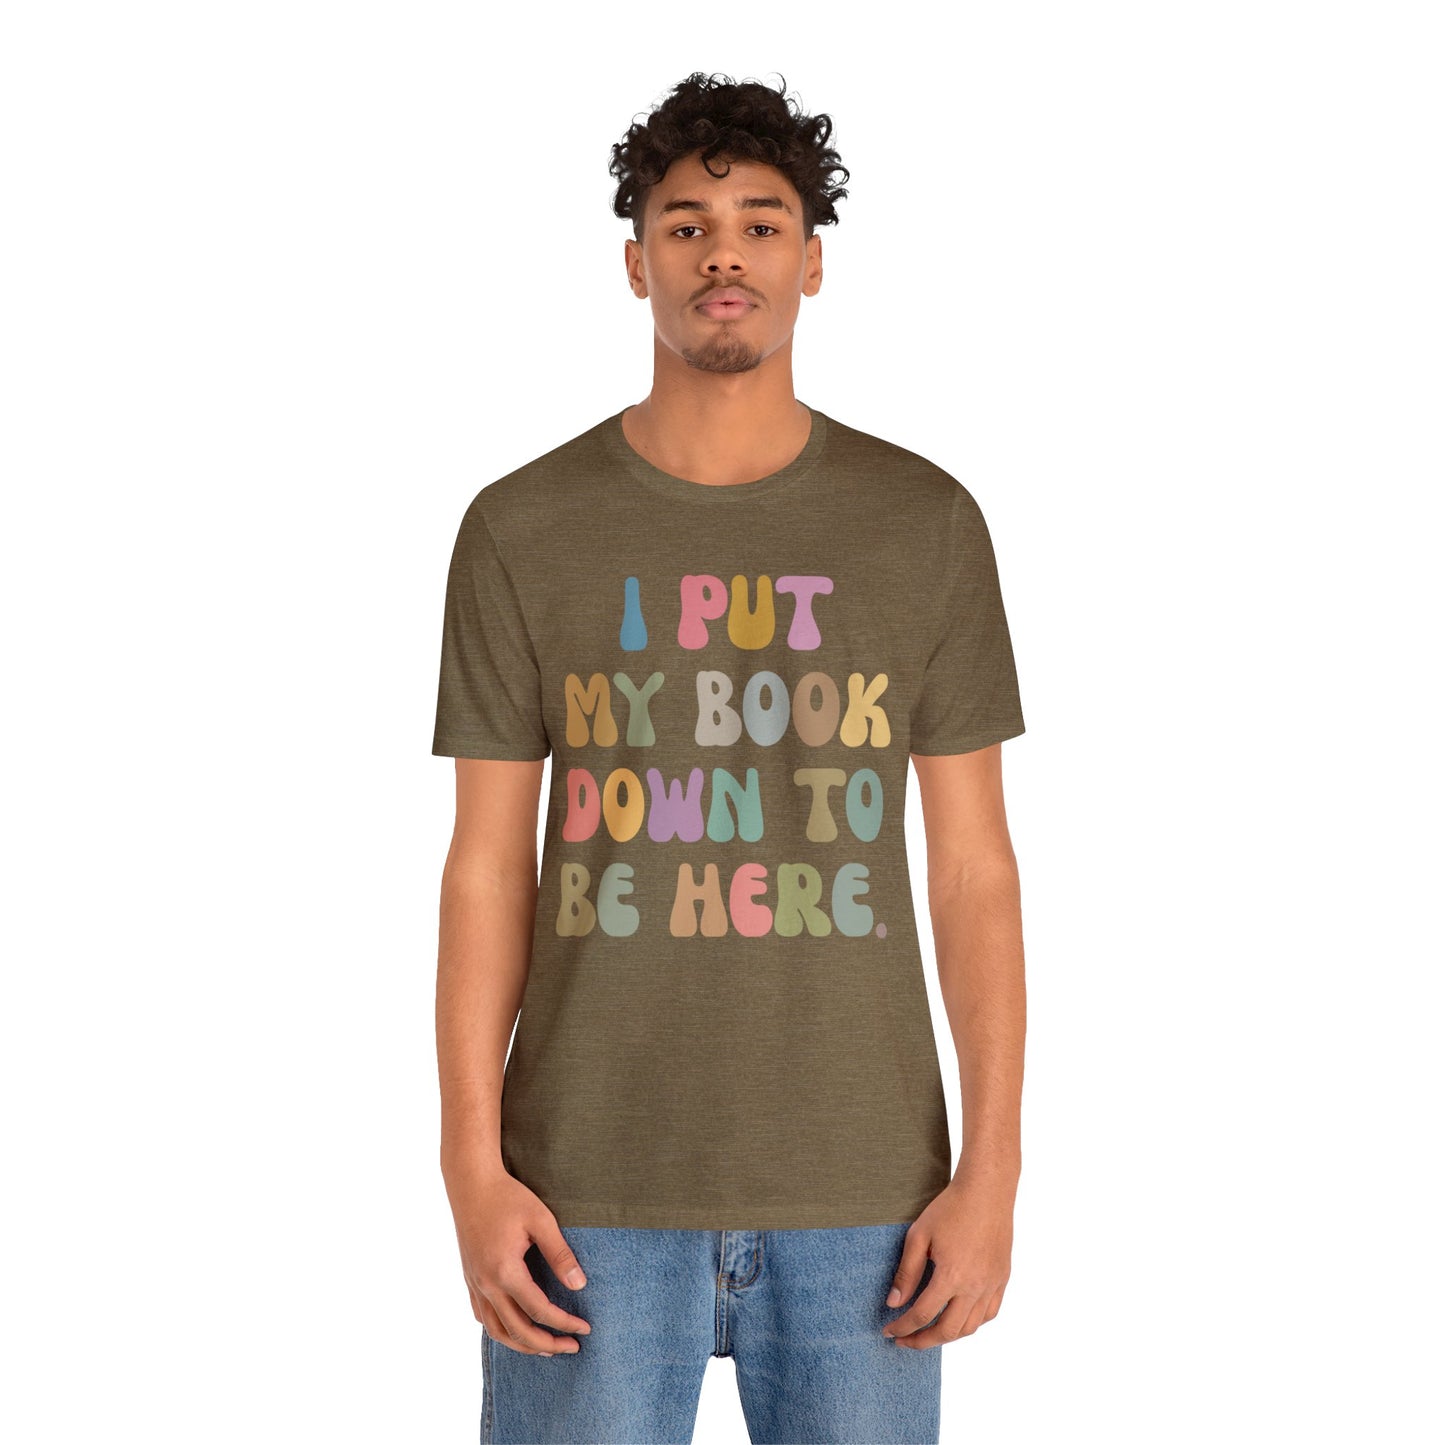 I Put My Book Down To Be Here Shirt, Bookworm Gift, Librarian Shirt, Shirt for Teacher, Book Lovers Club Shirt, Book Nerd Shirt, T1222